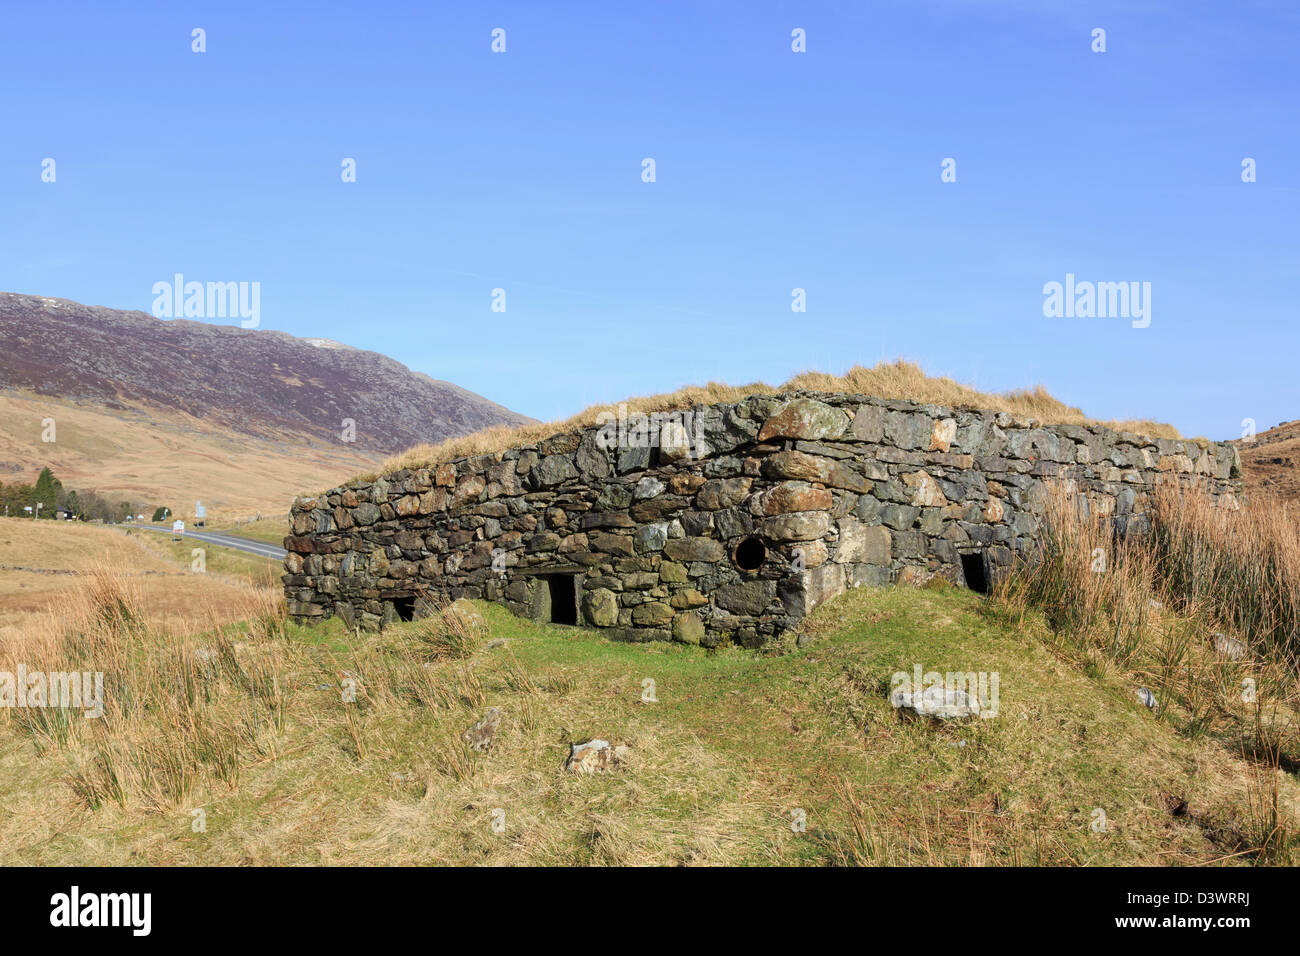 La seconde guerre mondiale, ancien bunker de défense casemate à pen-y-Pass dans le parc national de Snowdonia, Gwynedd, au nord du Pays de Galles, Royaume-Uni, Angleterre Banque D'Images